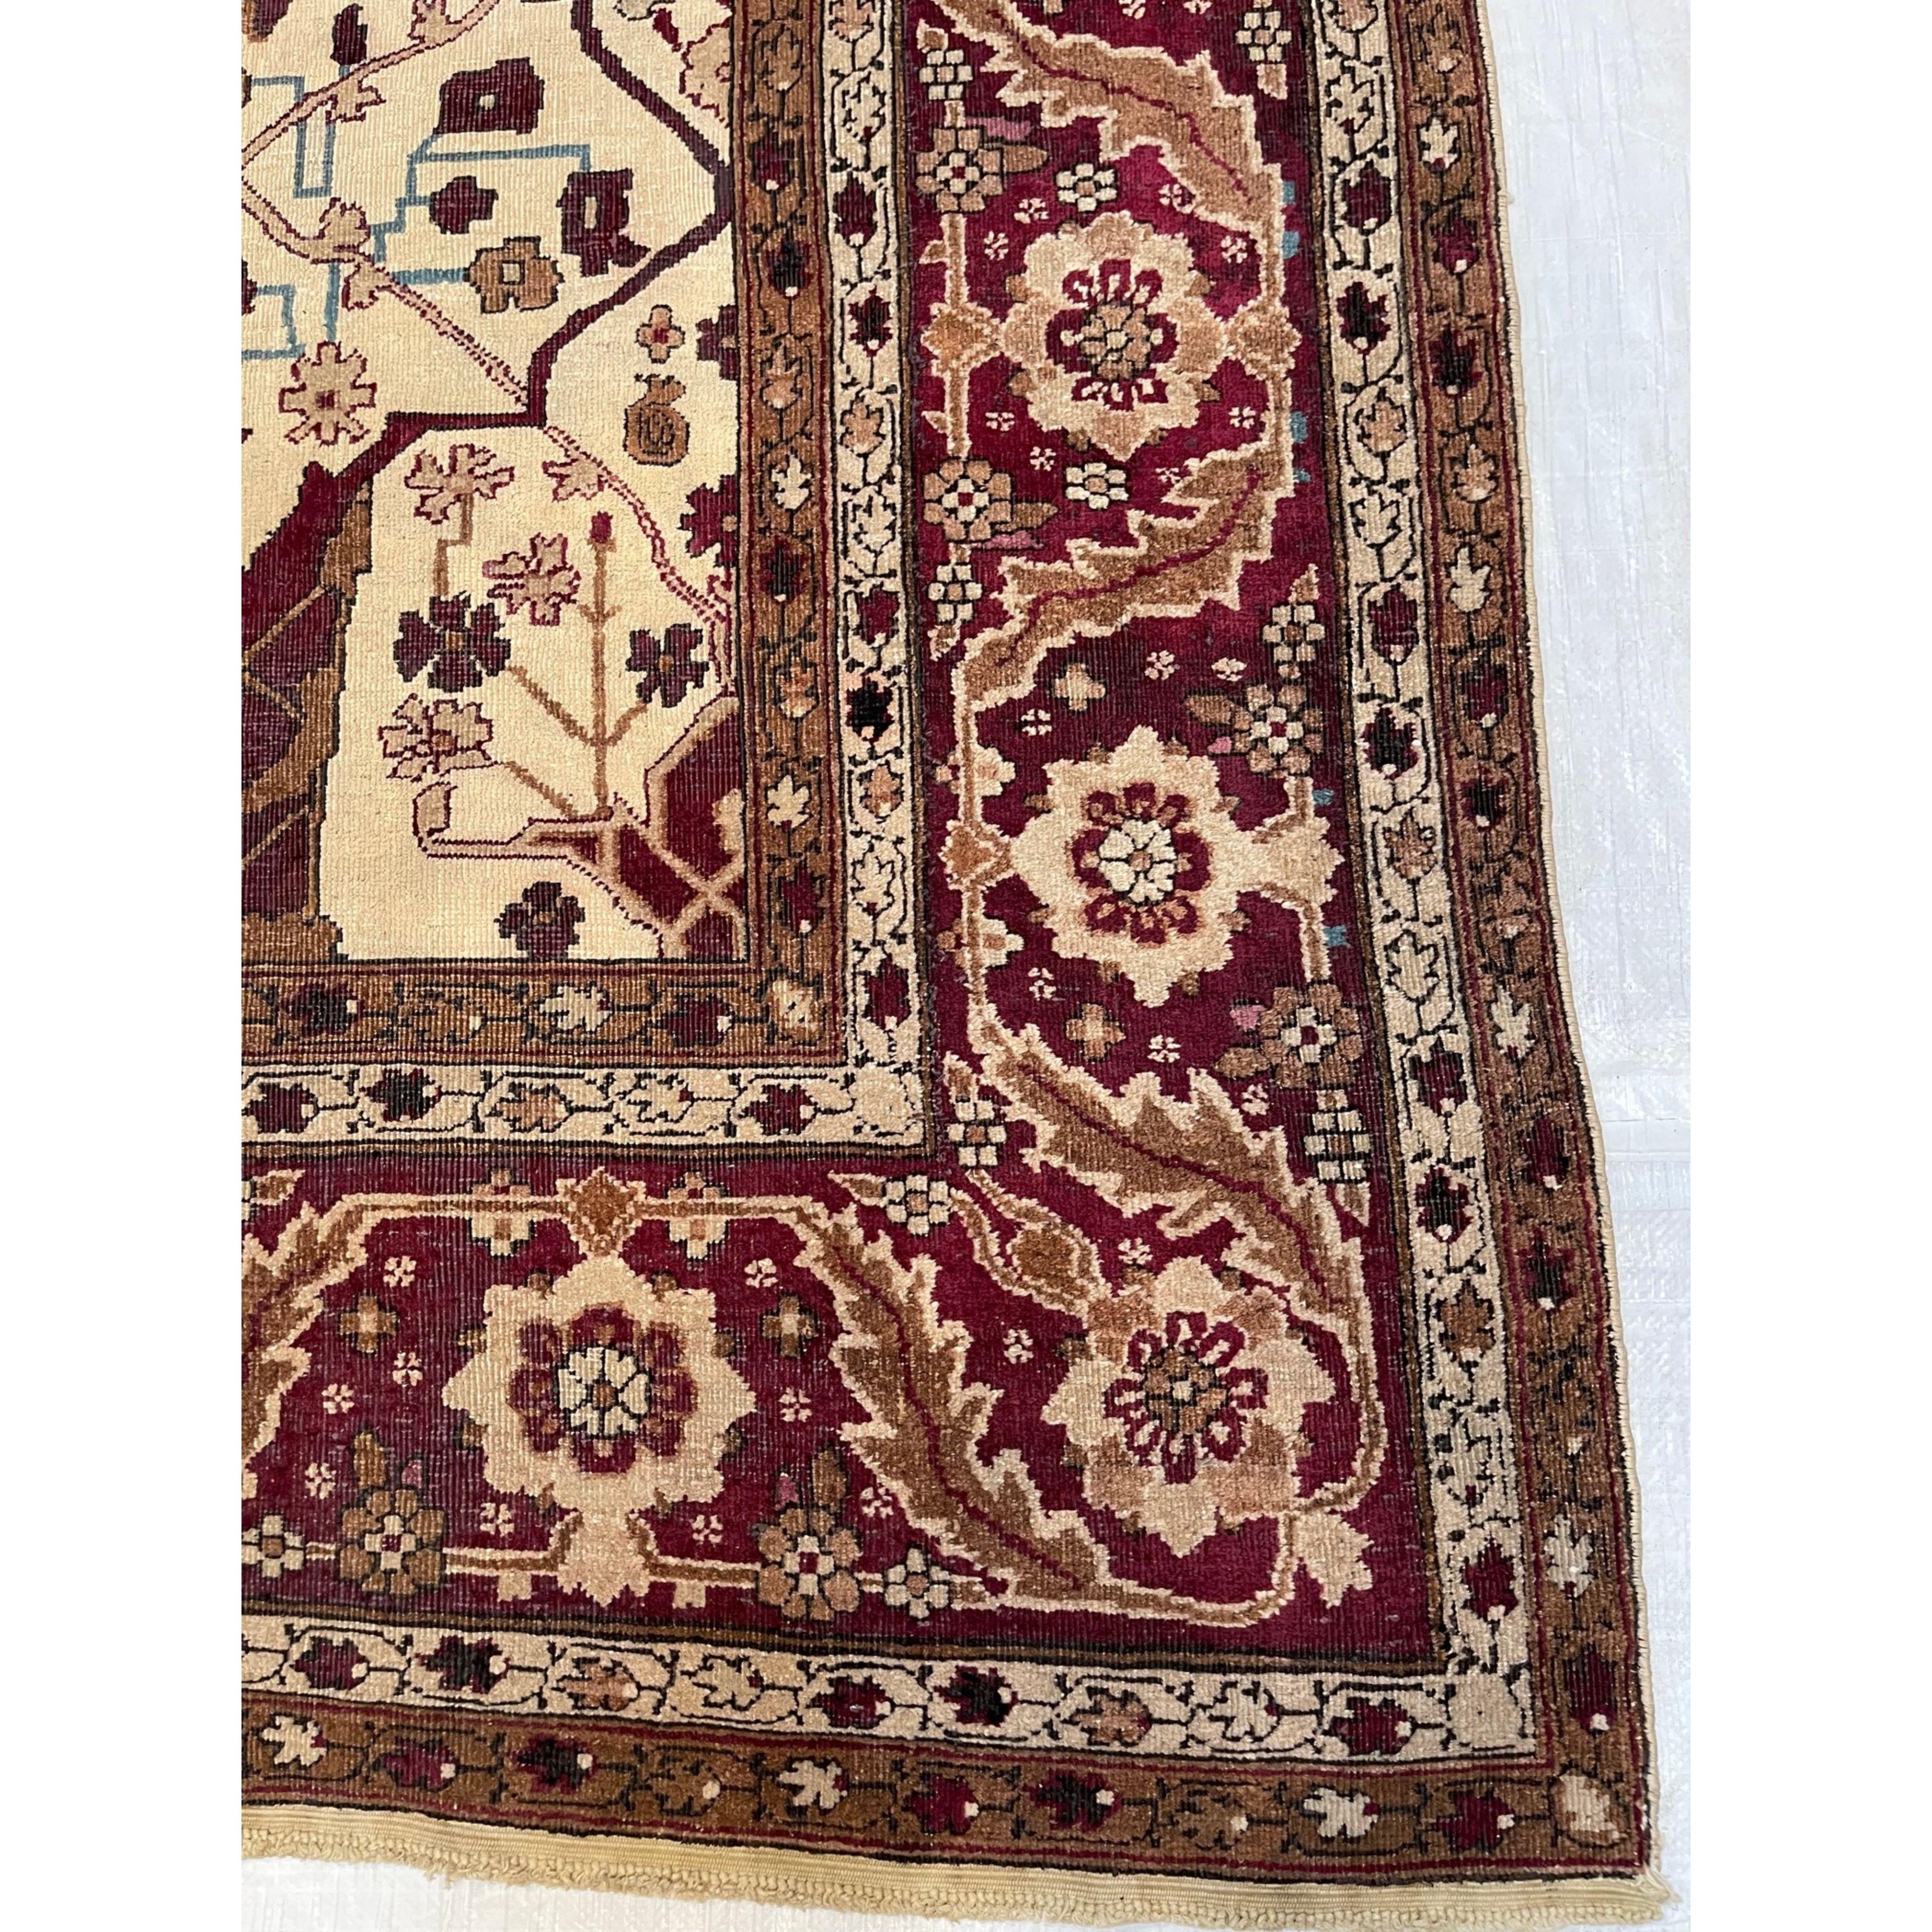 Antike Teppiche aus Amritsar - Die spektakulären Teppiche aus Amritsar fangen den exotischen Stil Indiens ein und weisen gleichzeitig einen subtilen kolonialen Einfluss auf. Diese Konvergenz östlicher und westlicher Stile führt zu einem